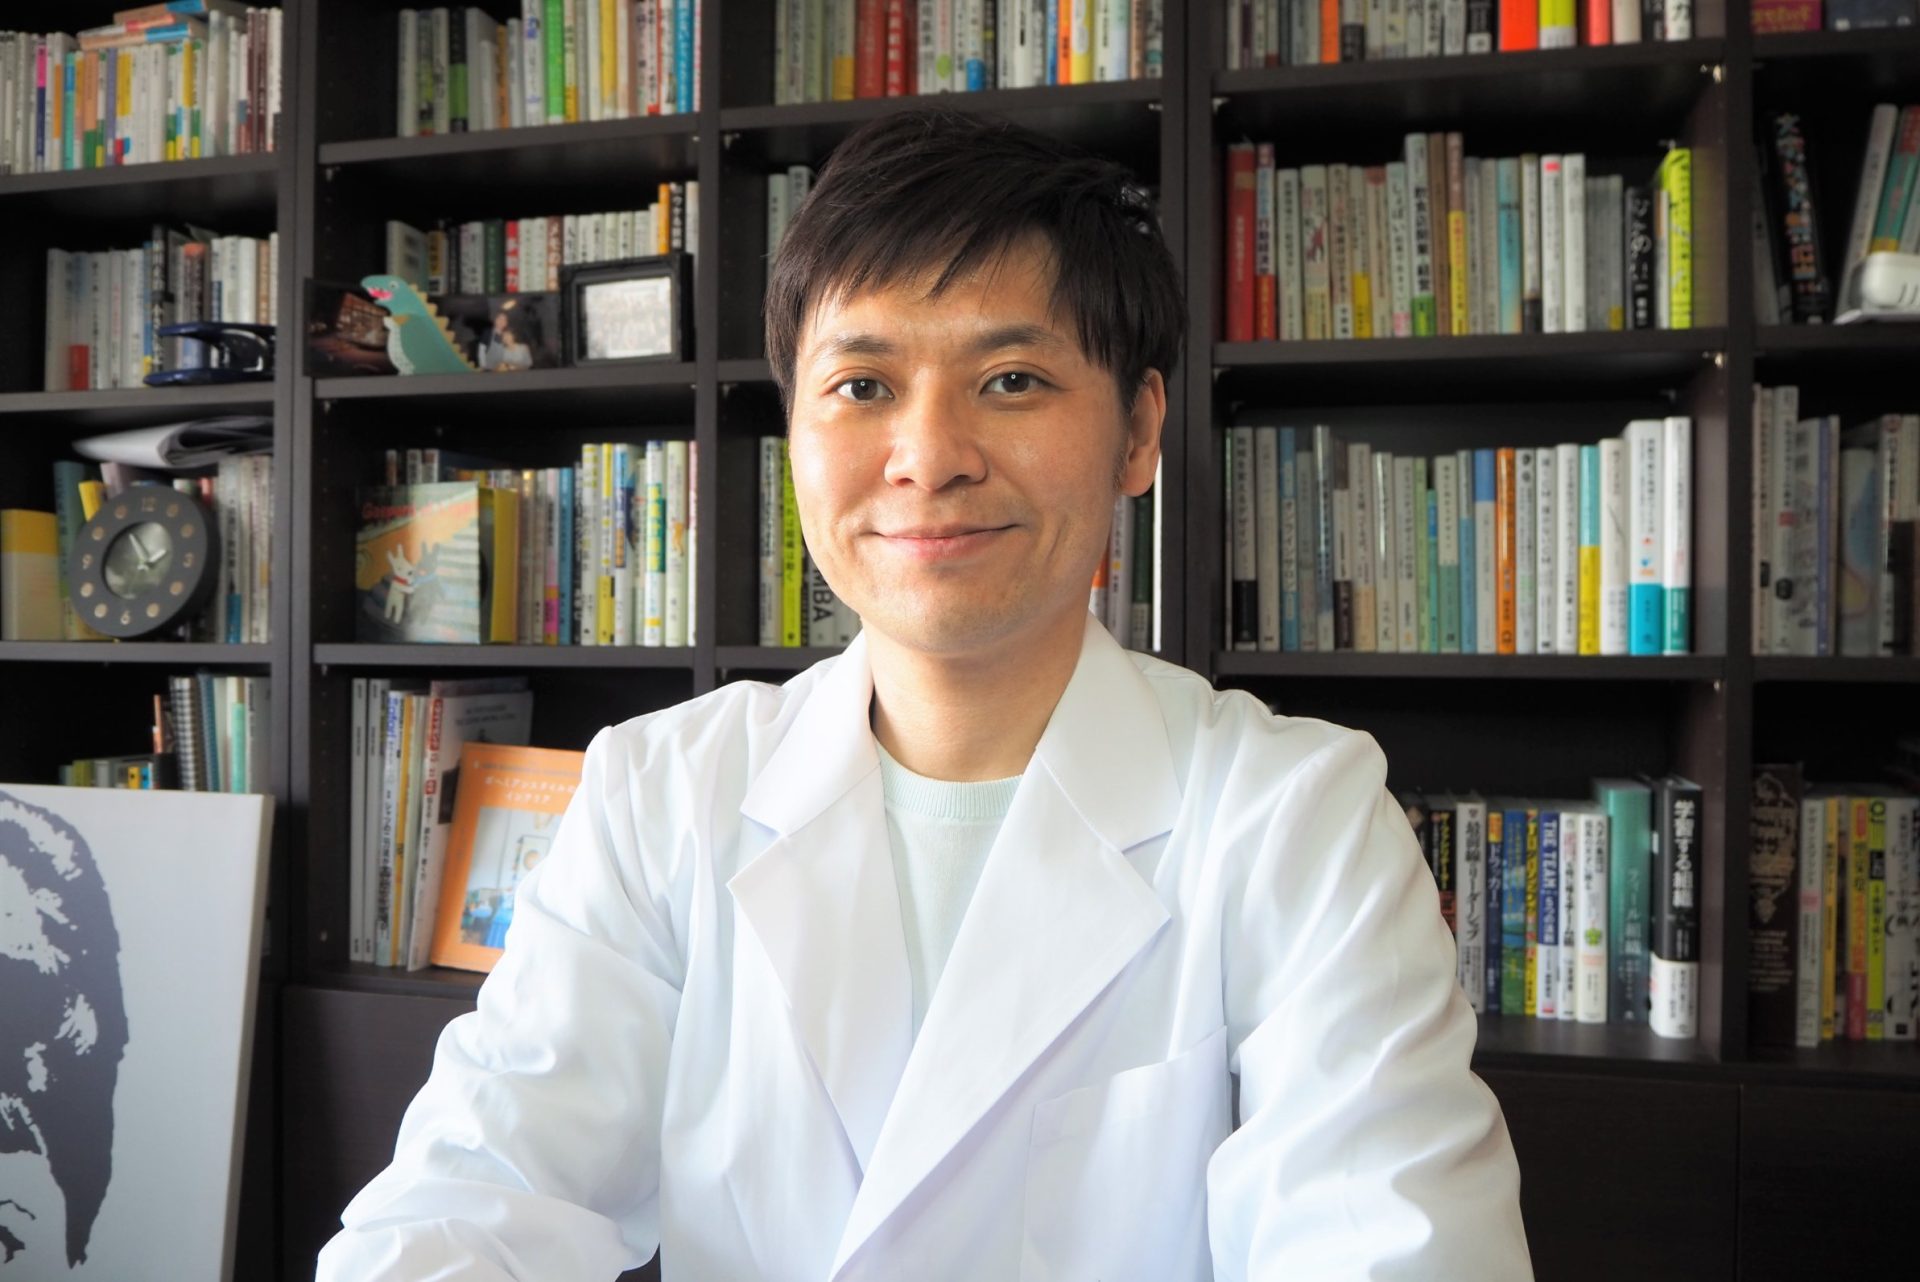 自らの闘病経験から医師へ――医療の課題解決に取り組む石井 洋介先生のあゆみ